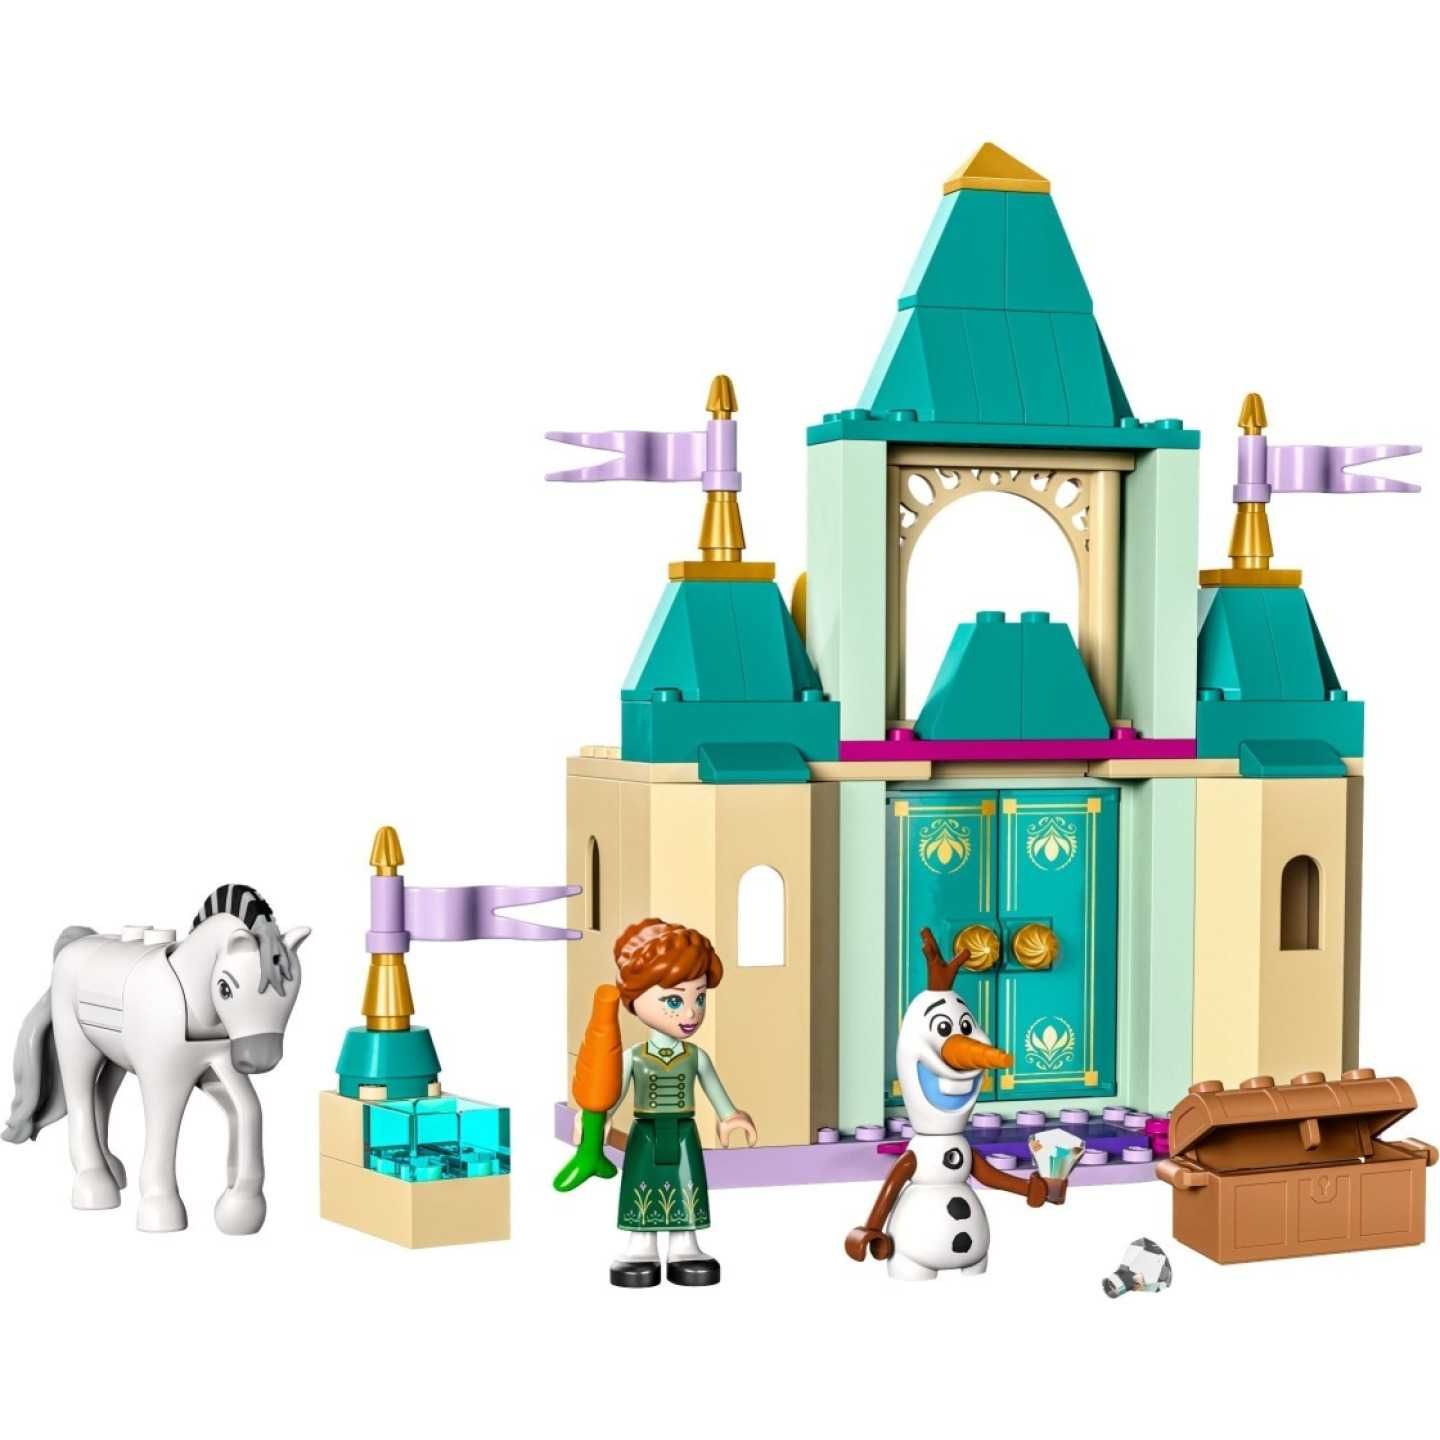 Lego Disney Princess 43204 Веселье в замке Анны и Олафа. В наличии